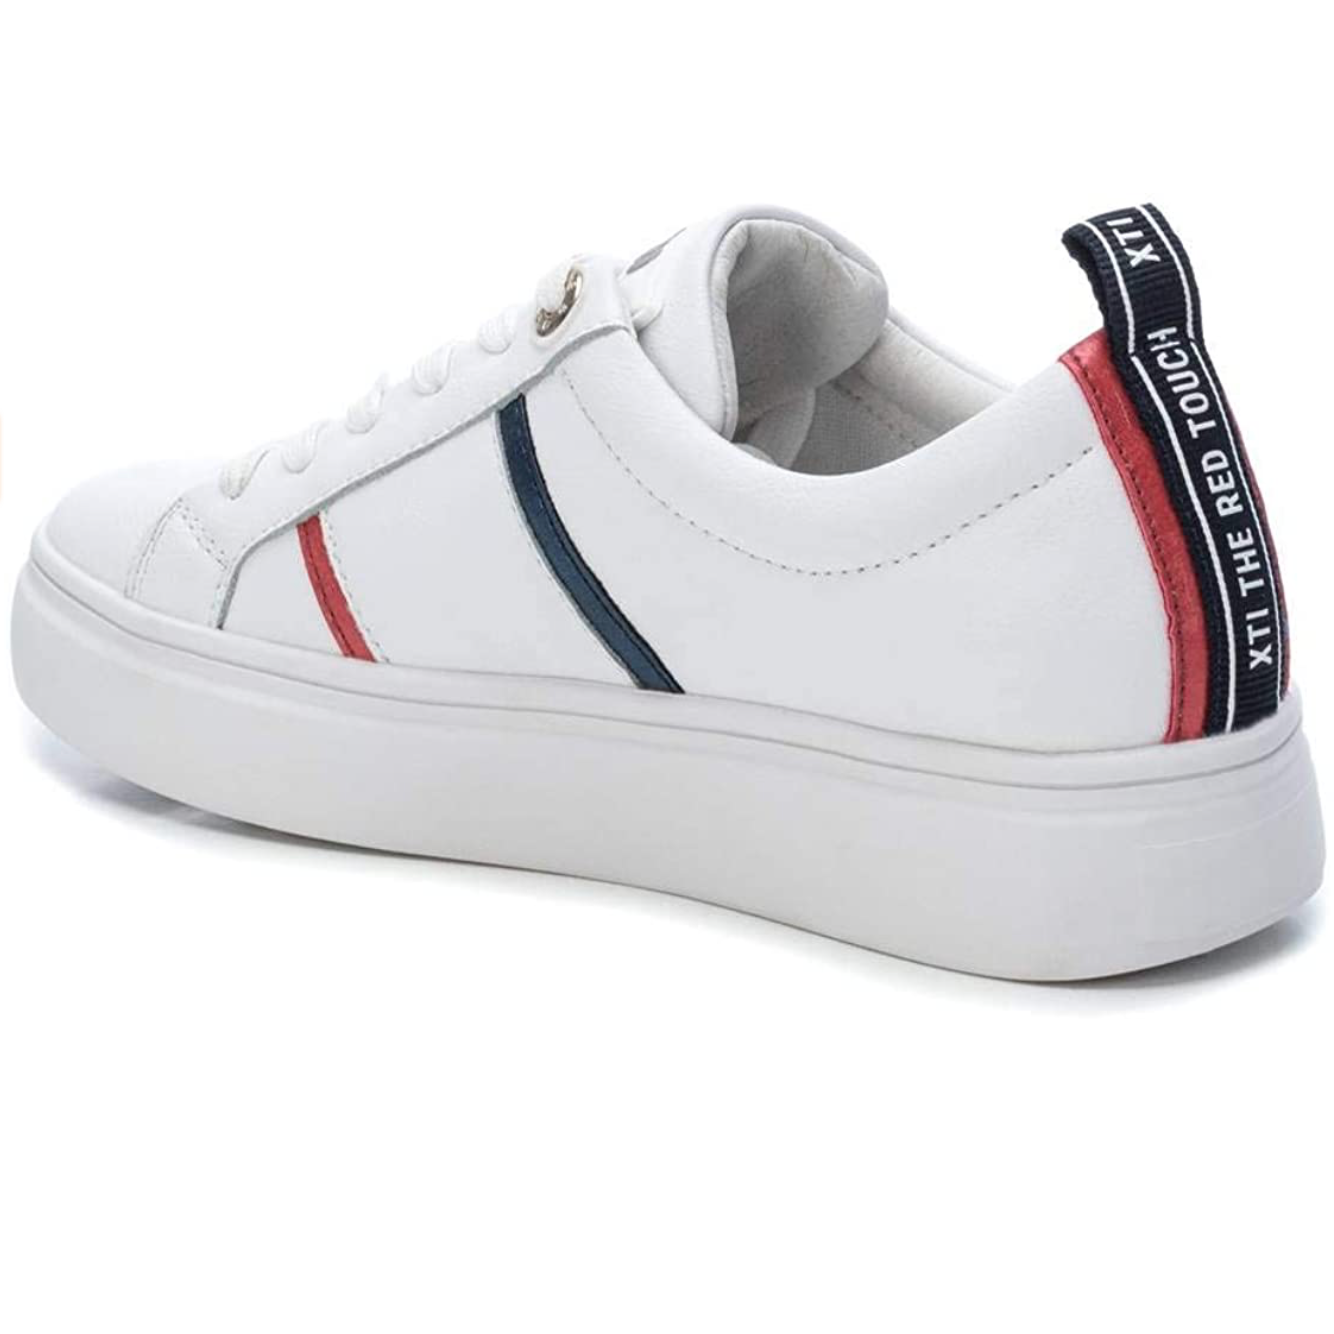 XTI - 44067 - Low Top Sneaker - White